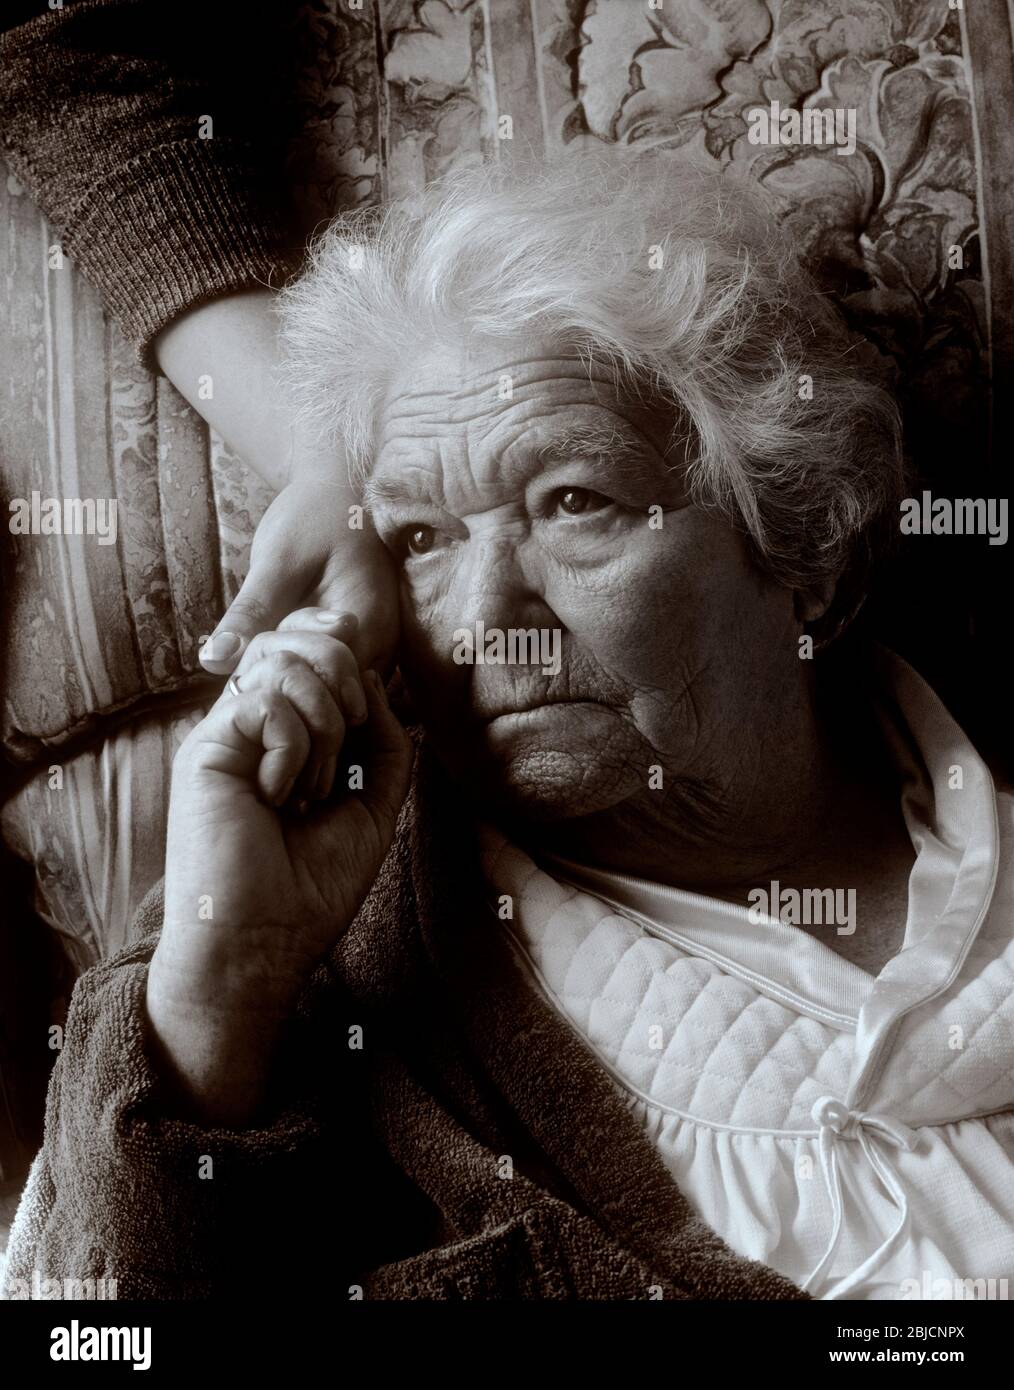 Alter Pflege besorgt ältere ältere Dame 90s Jahre hält beruhigende Hand der Betreuer in natürlichem Licht Innenraum Innen Porträt Vertikal Stockfoto